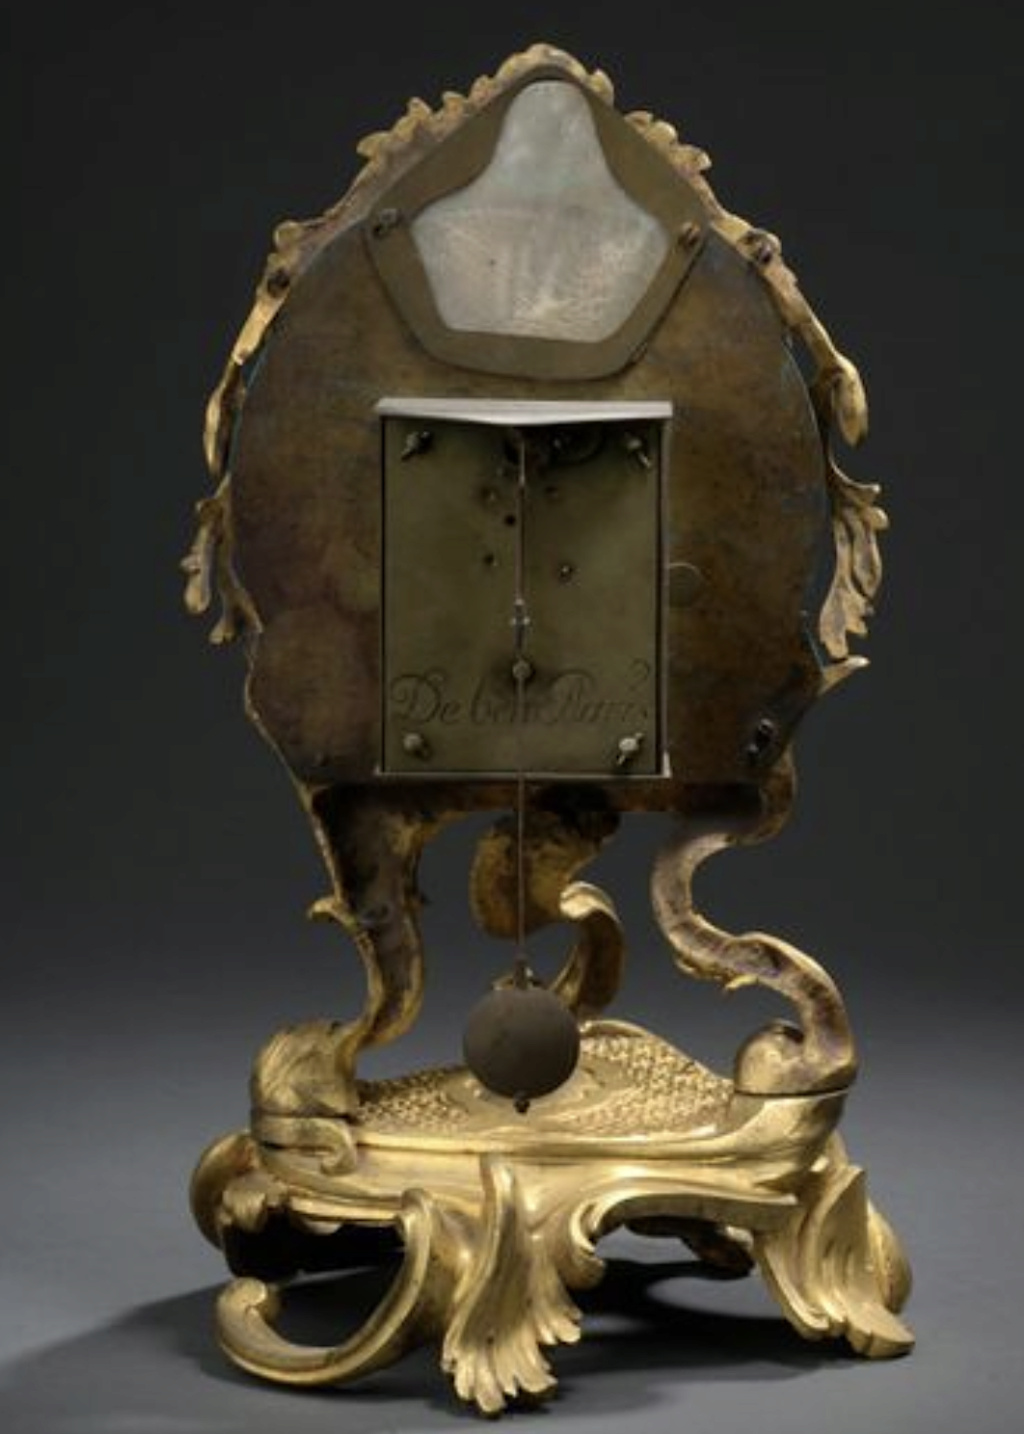 pendules - Horloges et pendules du XVIIIe siècle - Page 4 Capt3718